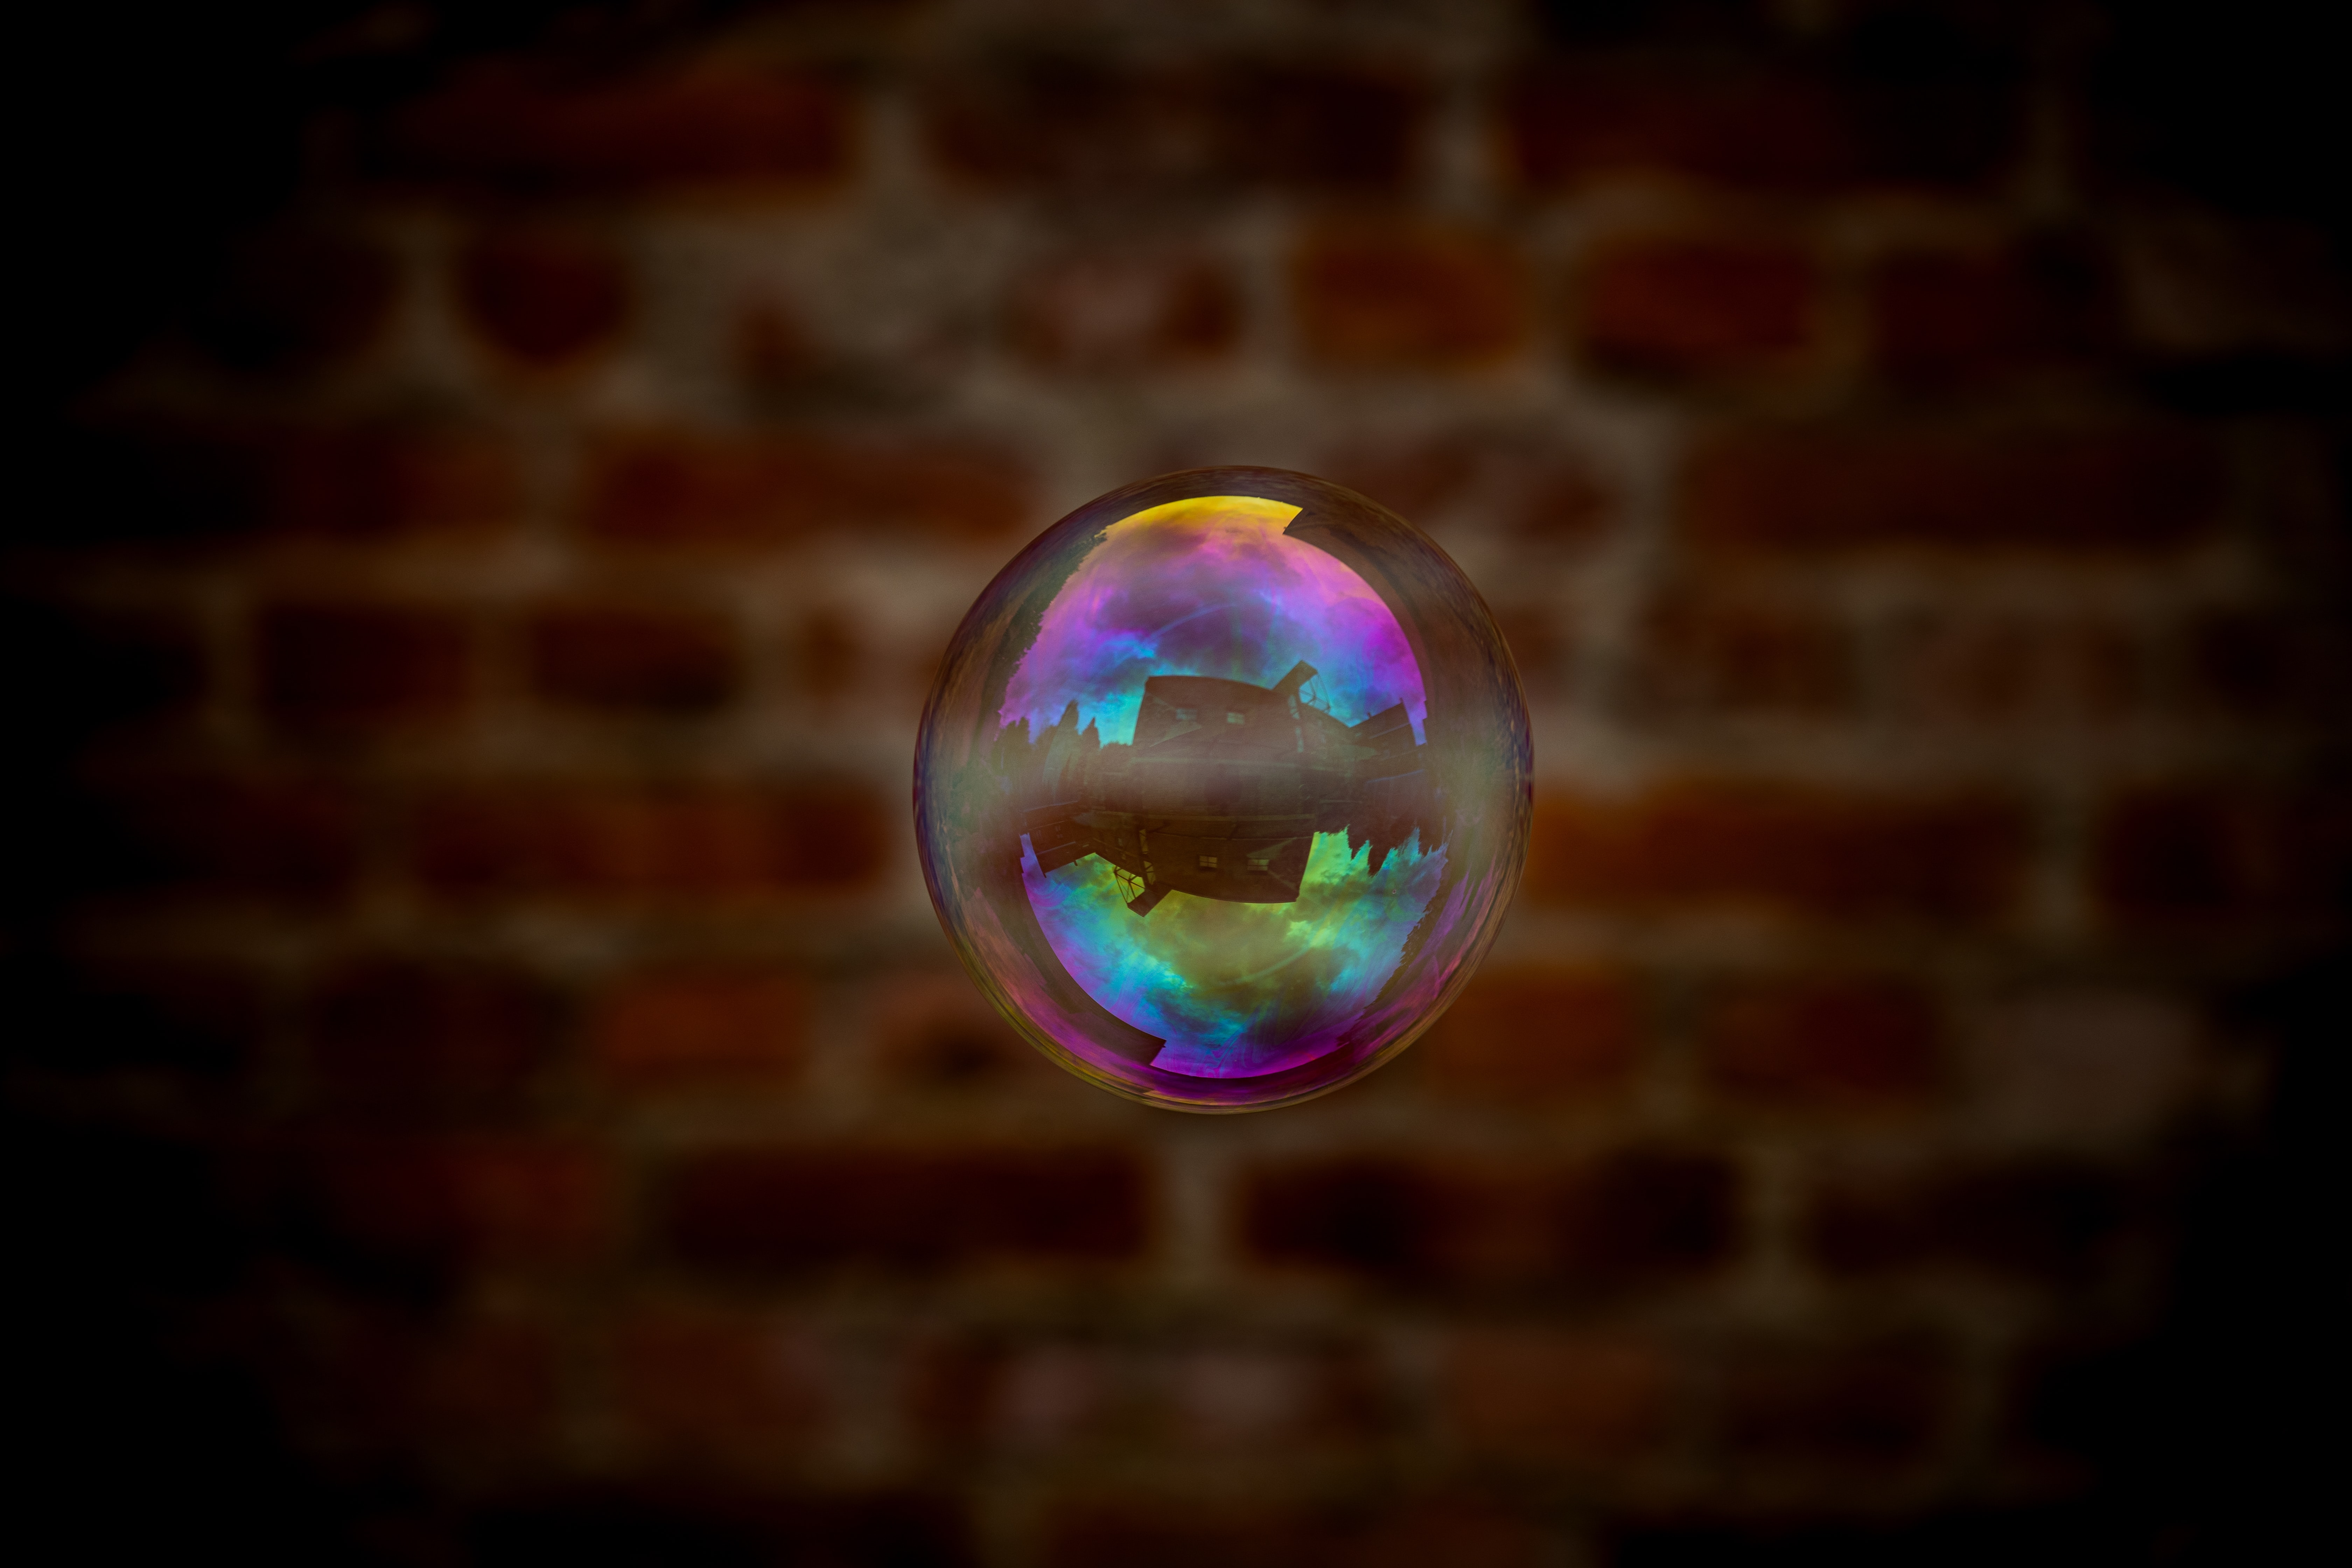 iridescent, reflection, transparent, macro, bubble, soap bubble